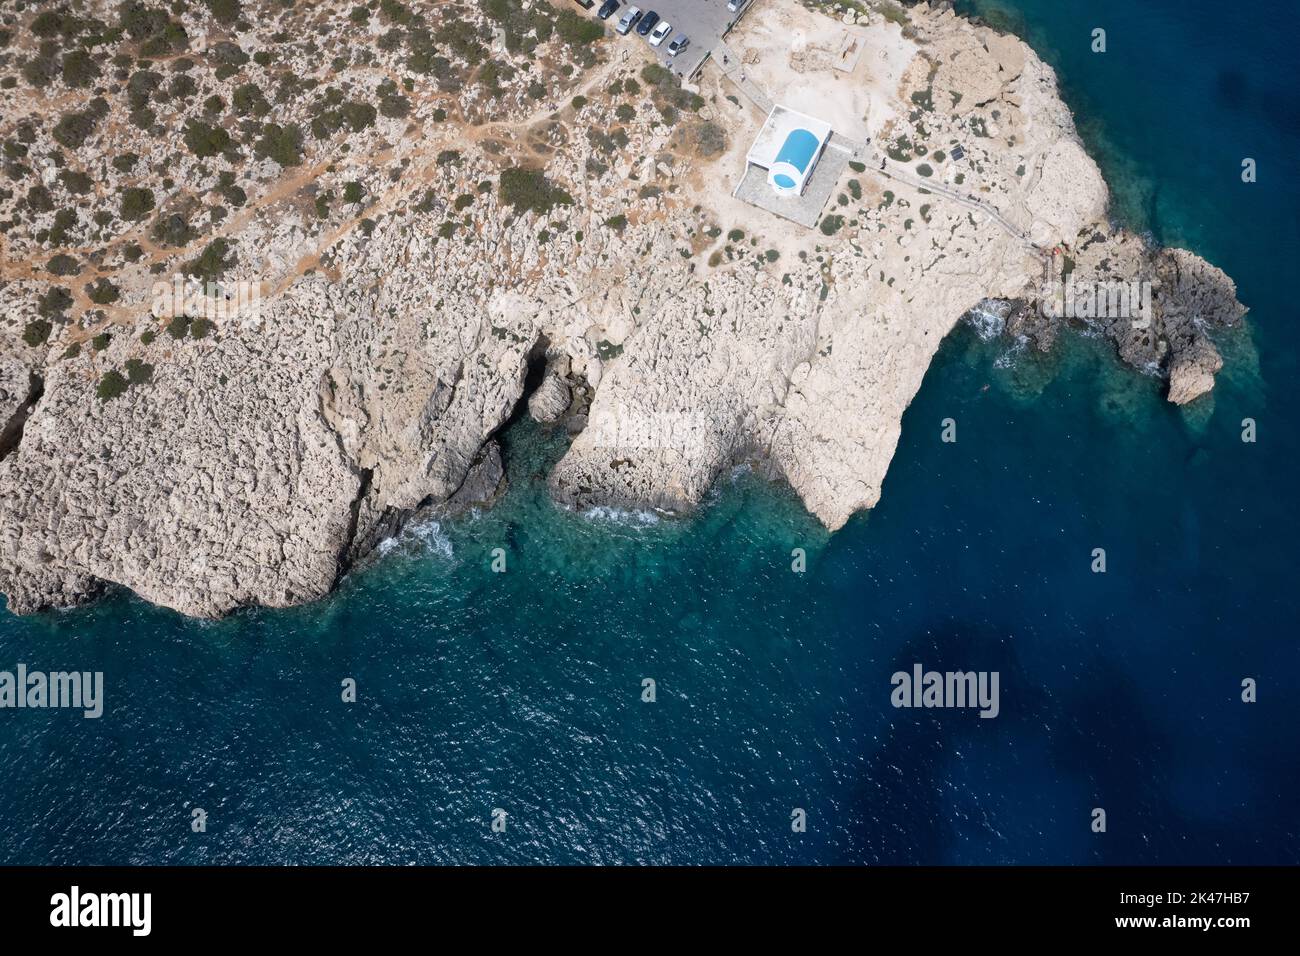 Fotografia aerea del drone della penisola di Capo Greco con la chiesa di Agioi Anargyroi sulle rocce. Acque turchesi dell'oceano Foto Stock